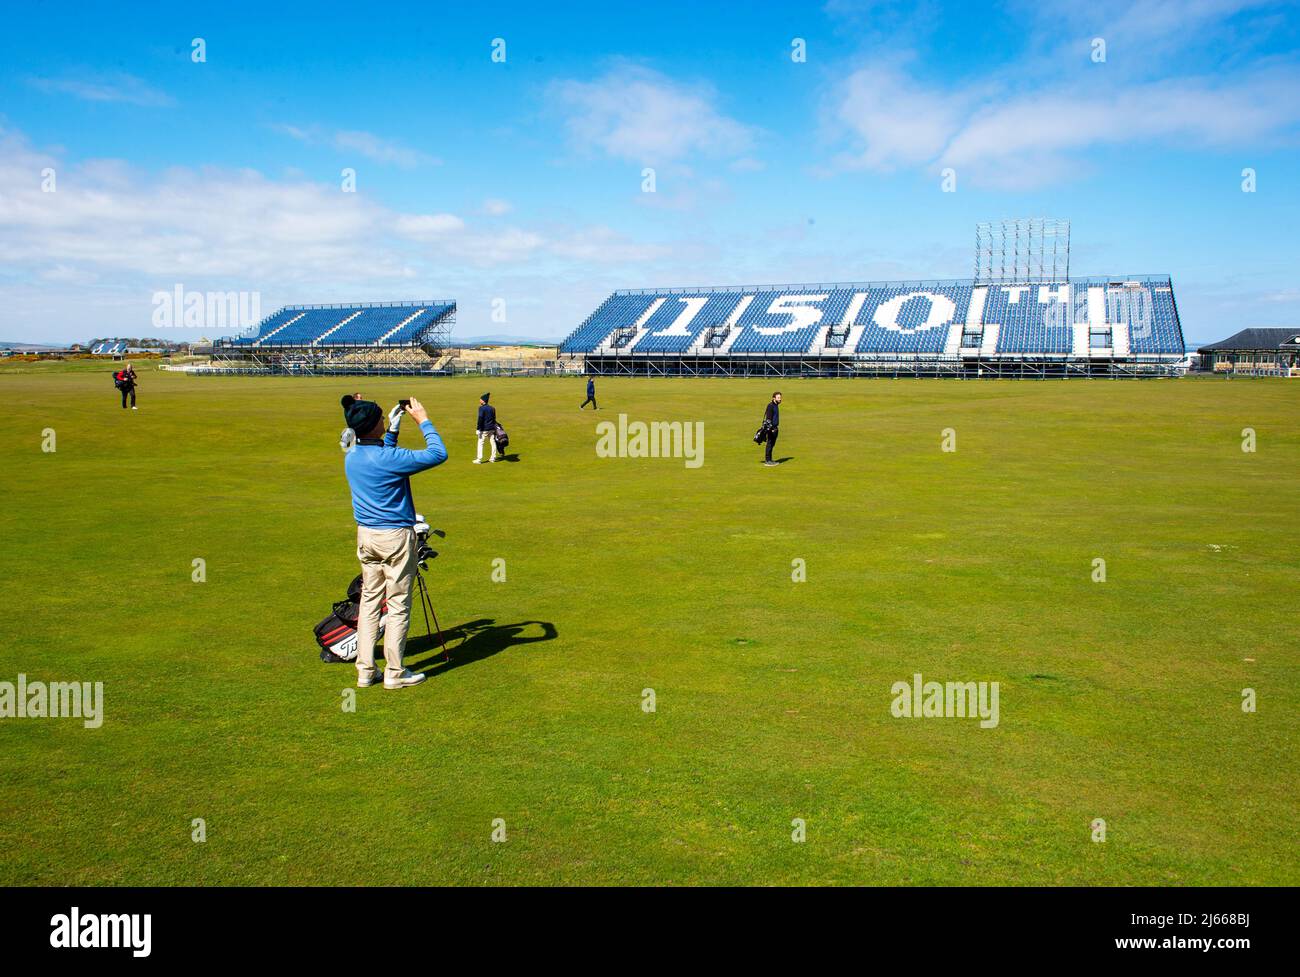 Temporäre Stände mit Blick auf die Fairway 1. und 18. des Old Course, auf dem im Juli 2022 das Open Golf Turnier 150. in St Andrews ausgetragen wird. Stockfoto